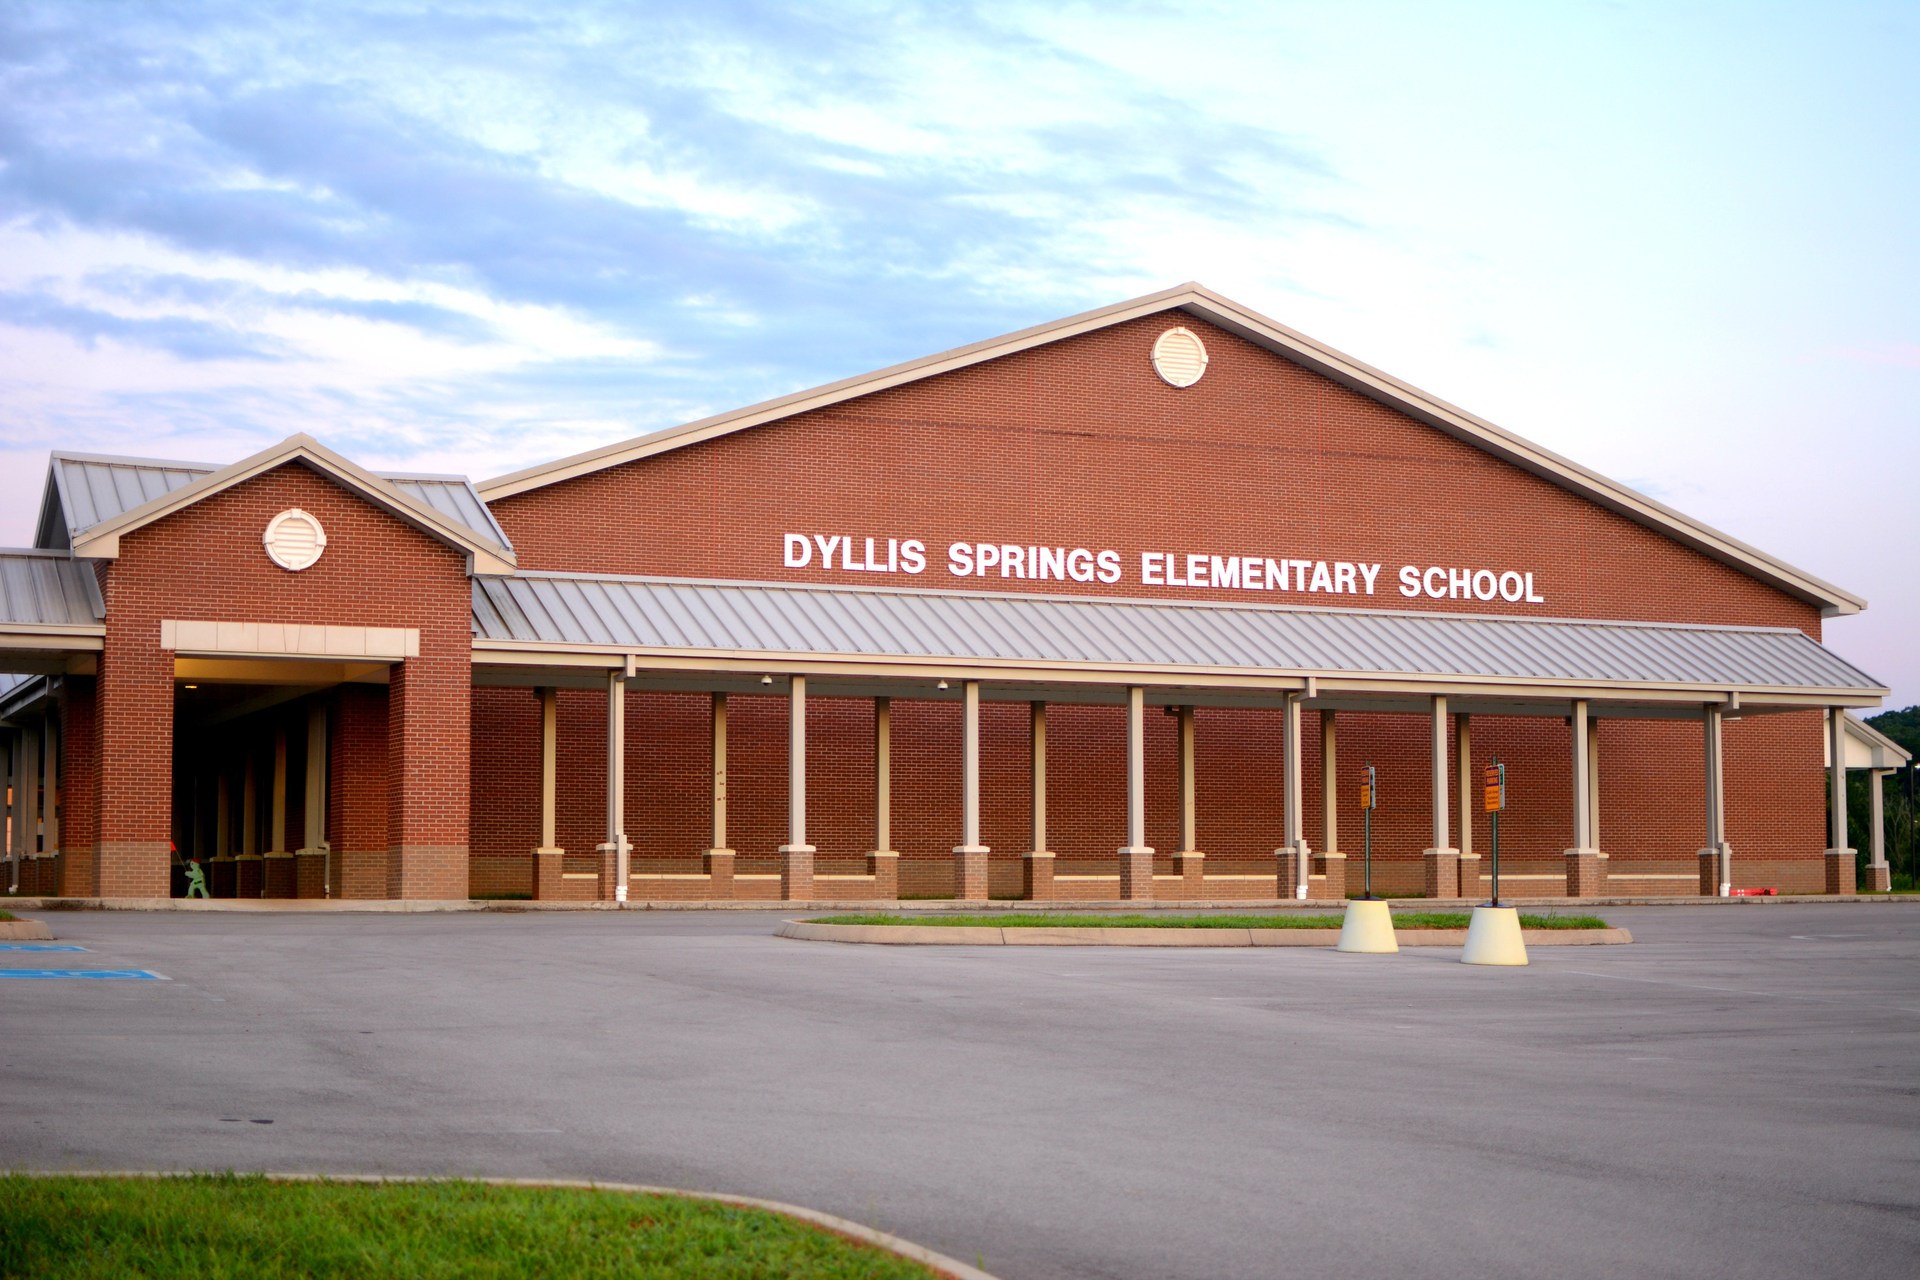 Dyllis Springs Elementary